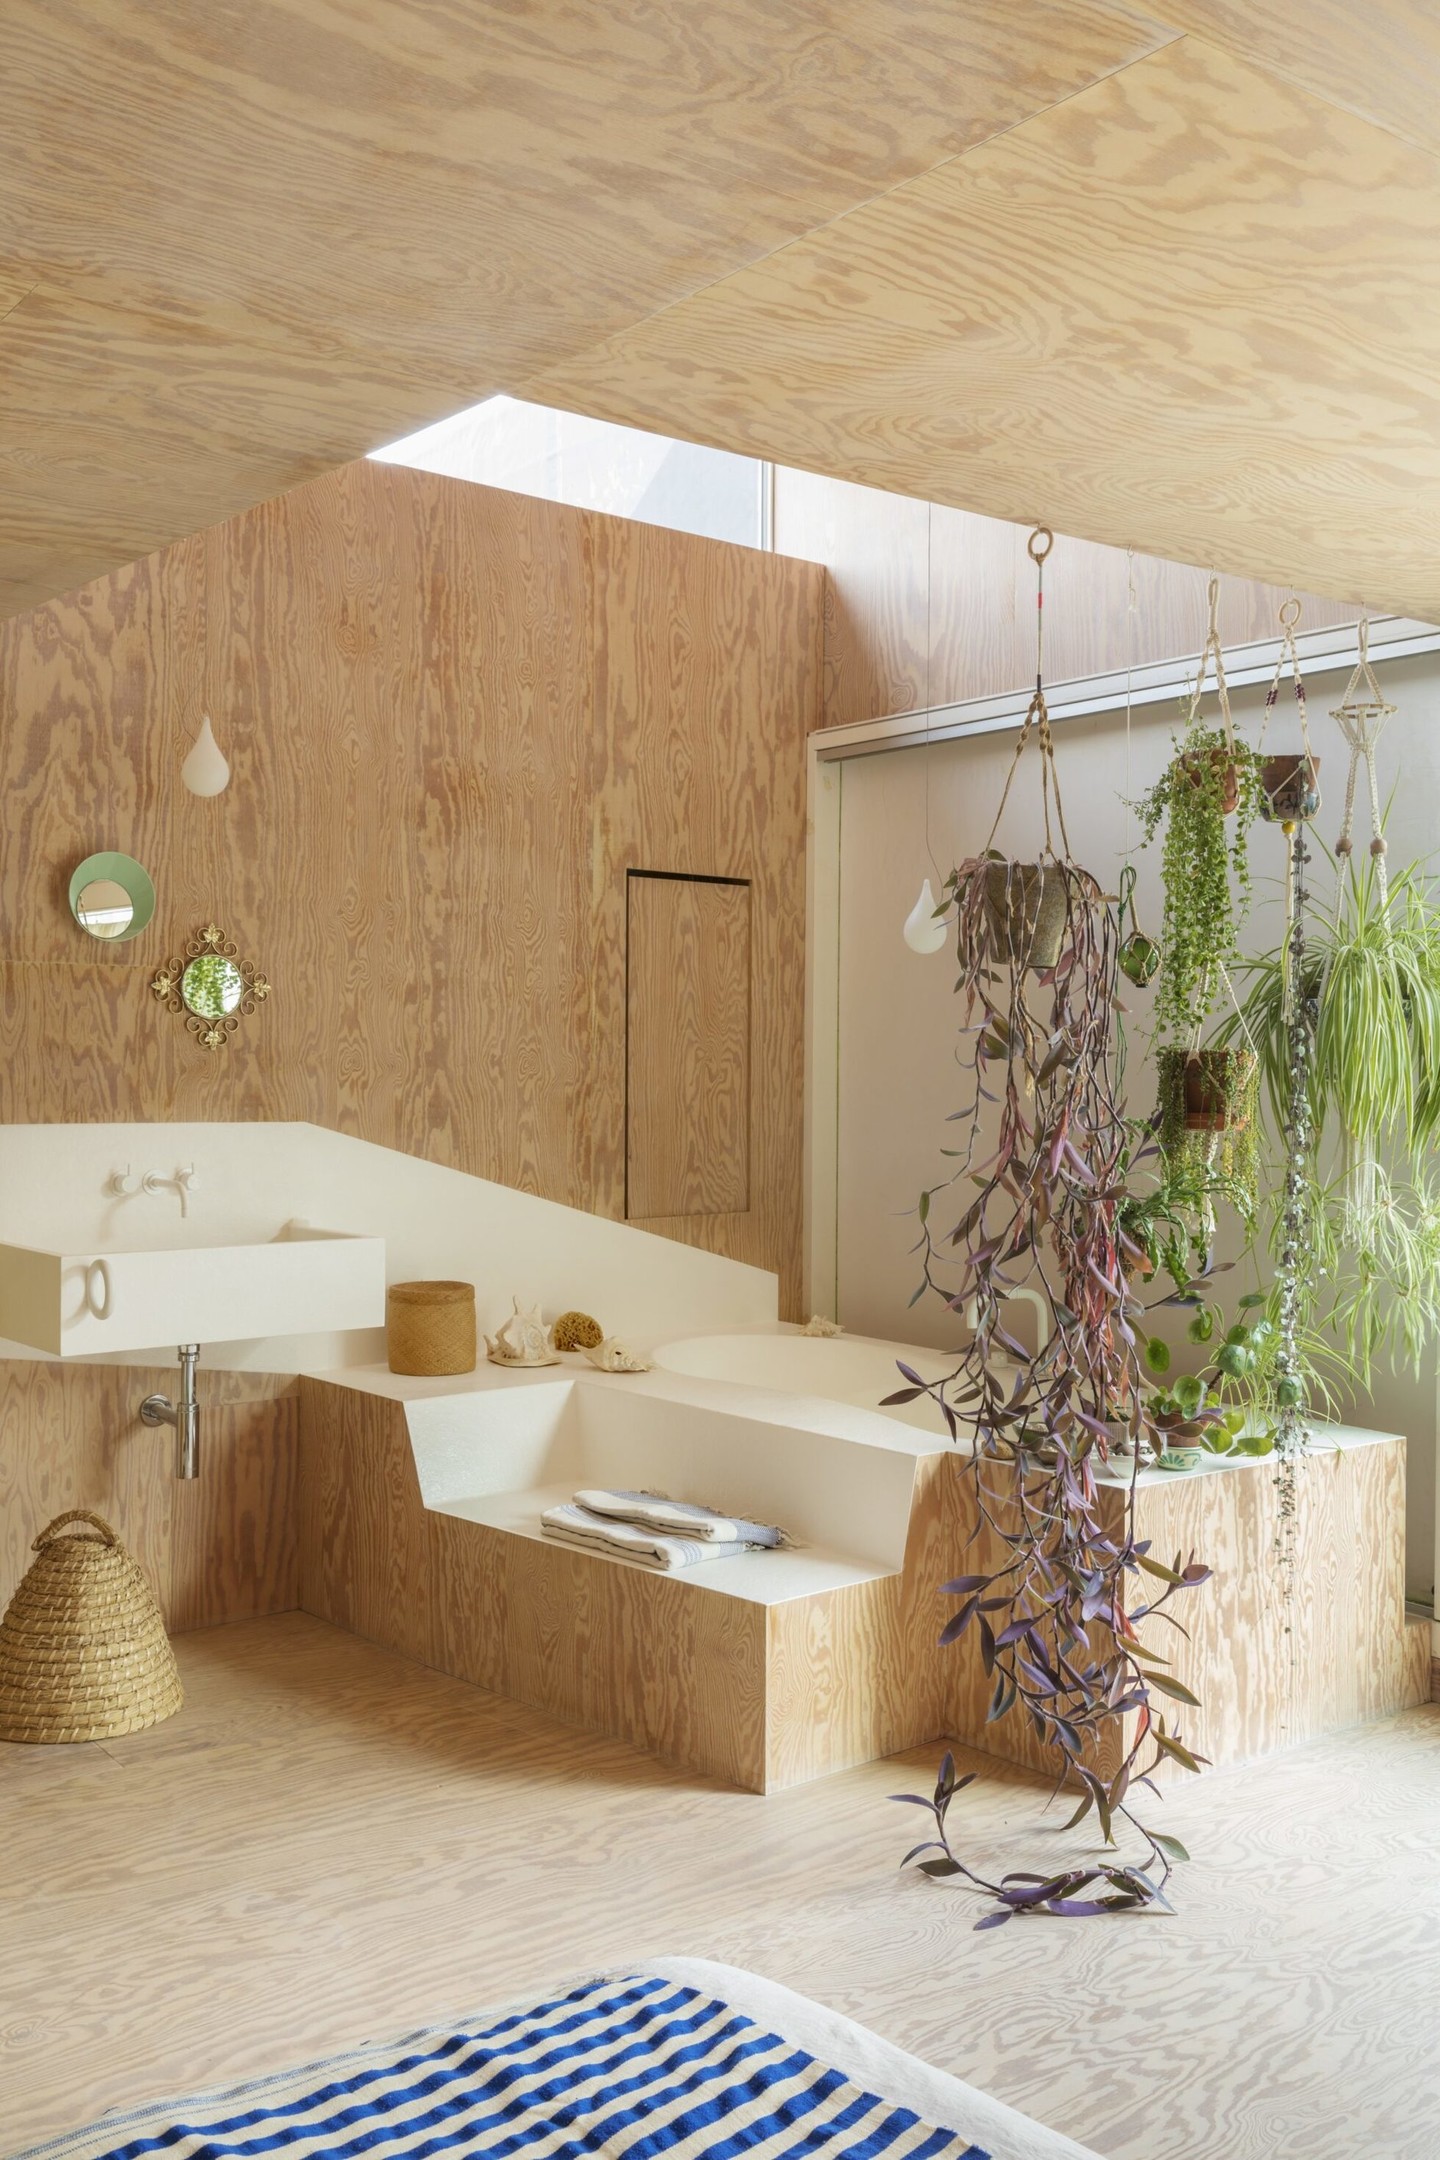 Được thực hiện bởi NTK Wim Depuyt, phòng tắm này tuy không sử dụng 100% vật liệu gỗ nhưng vẫn tạo cảm giác gần gũi, mộc mạc. Sự kết hợp gỗ và sứ tráng men cùng những giỏ cây cảnh mang lại sự sinh động cho phòng tắm rộng rãi này.